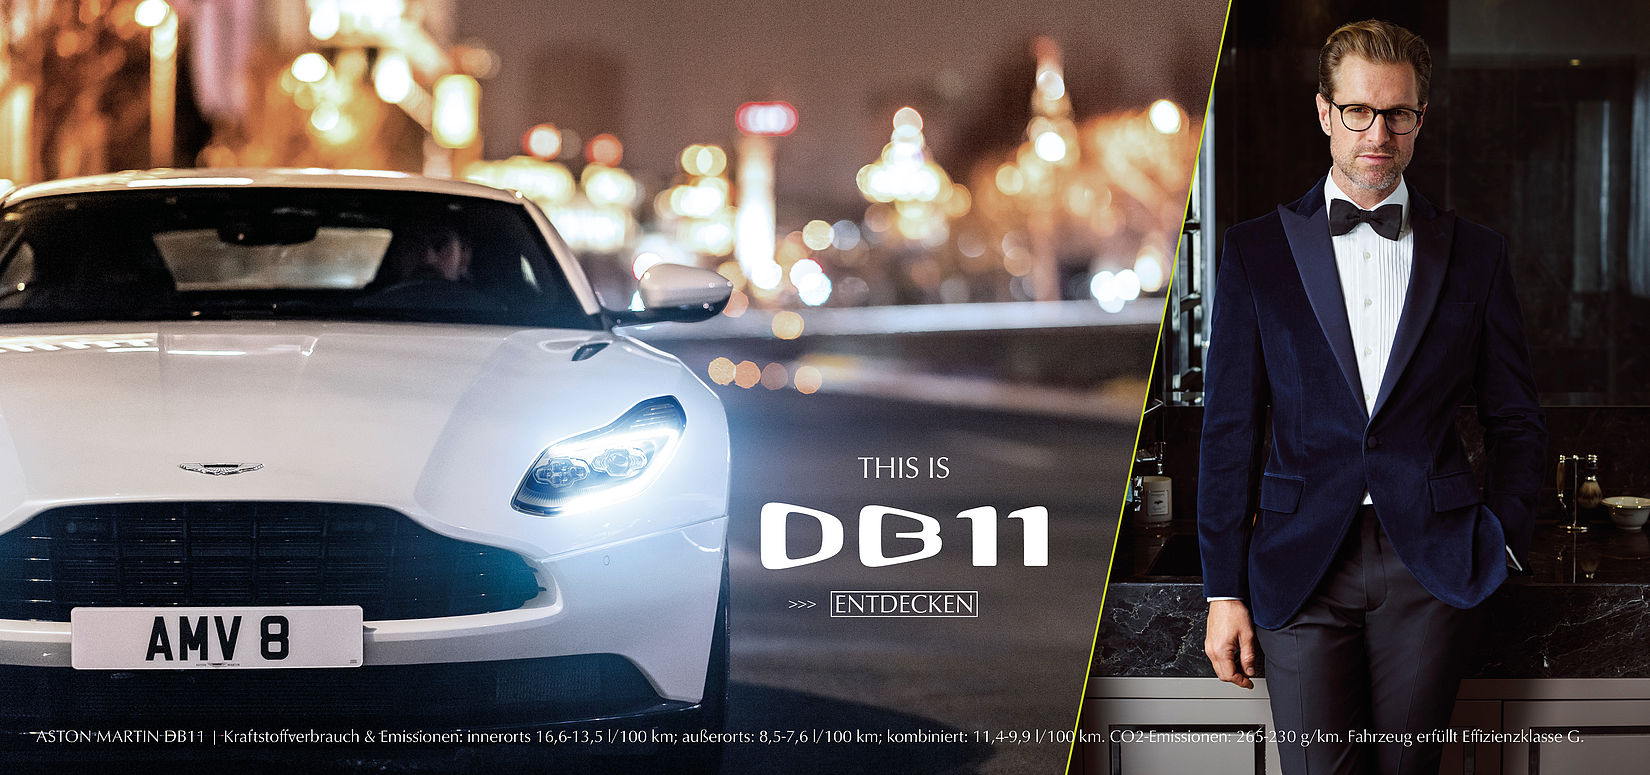 THIS IS DB11 - Jetzt den Aston Martin DB11 entdecken.